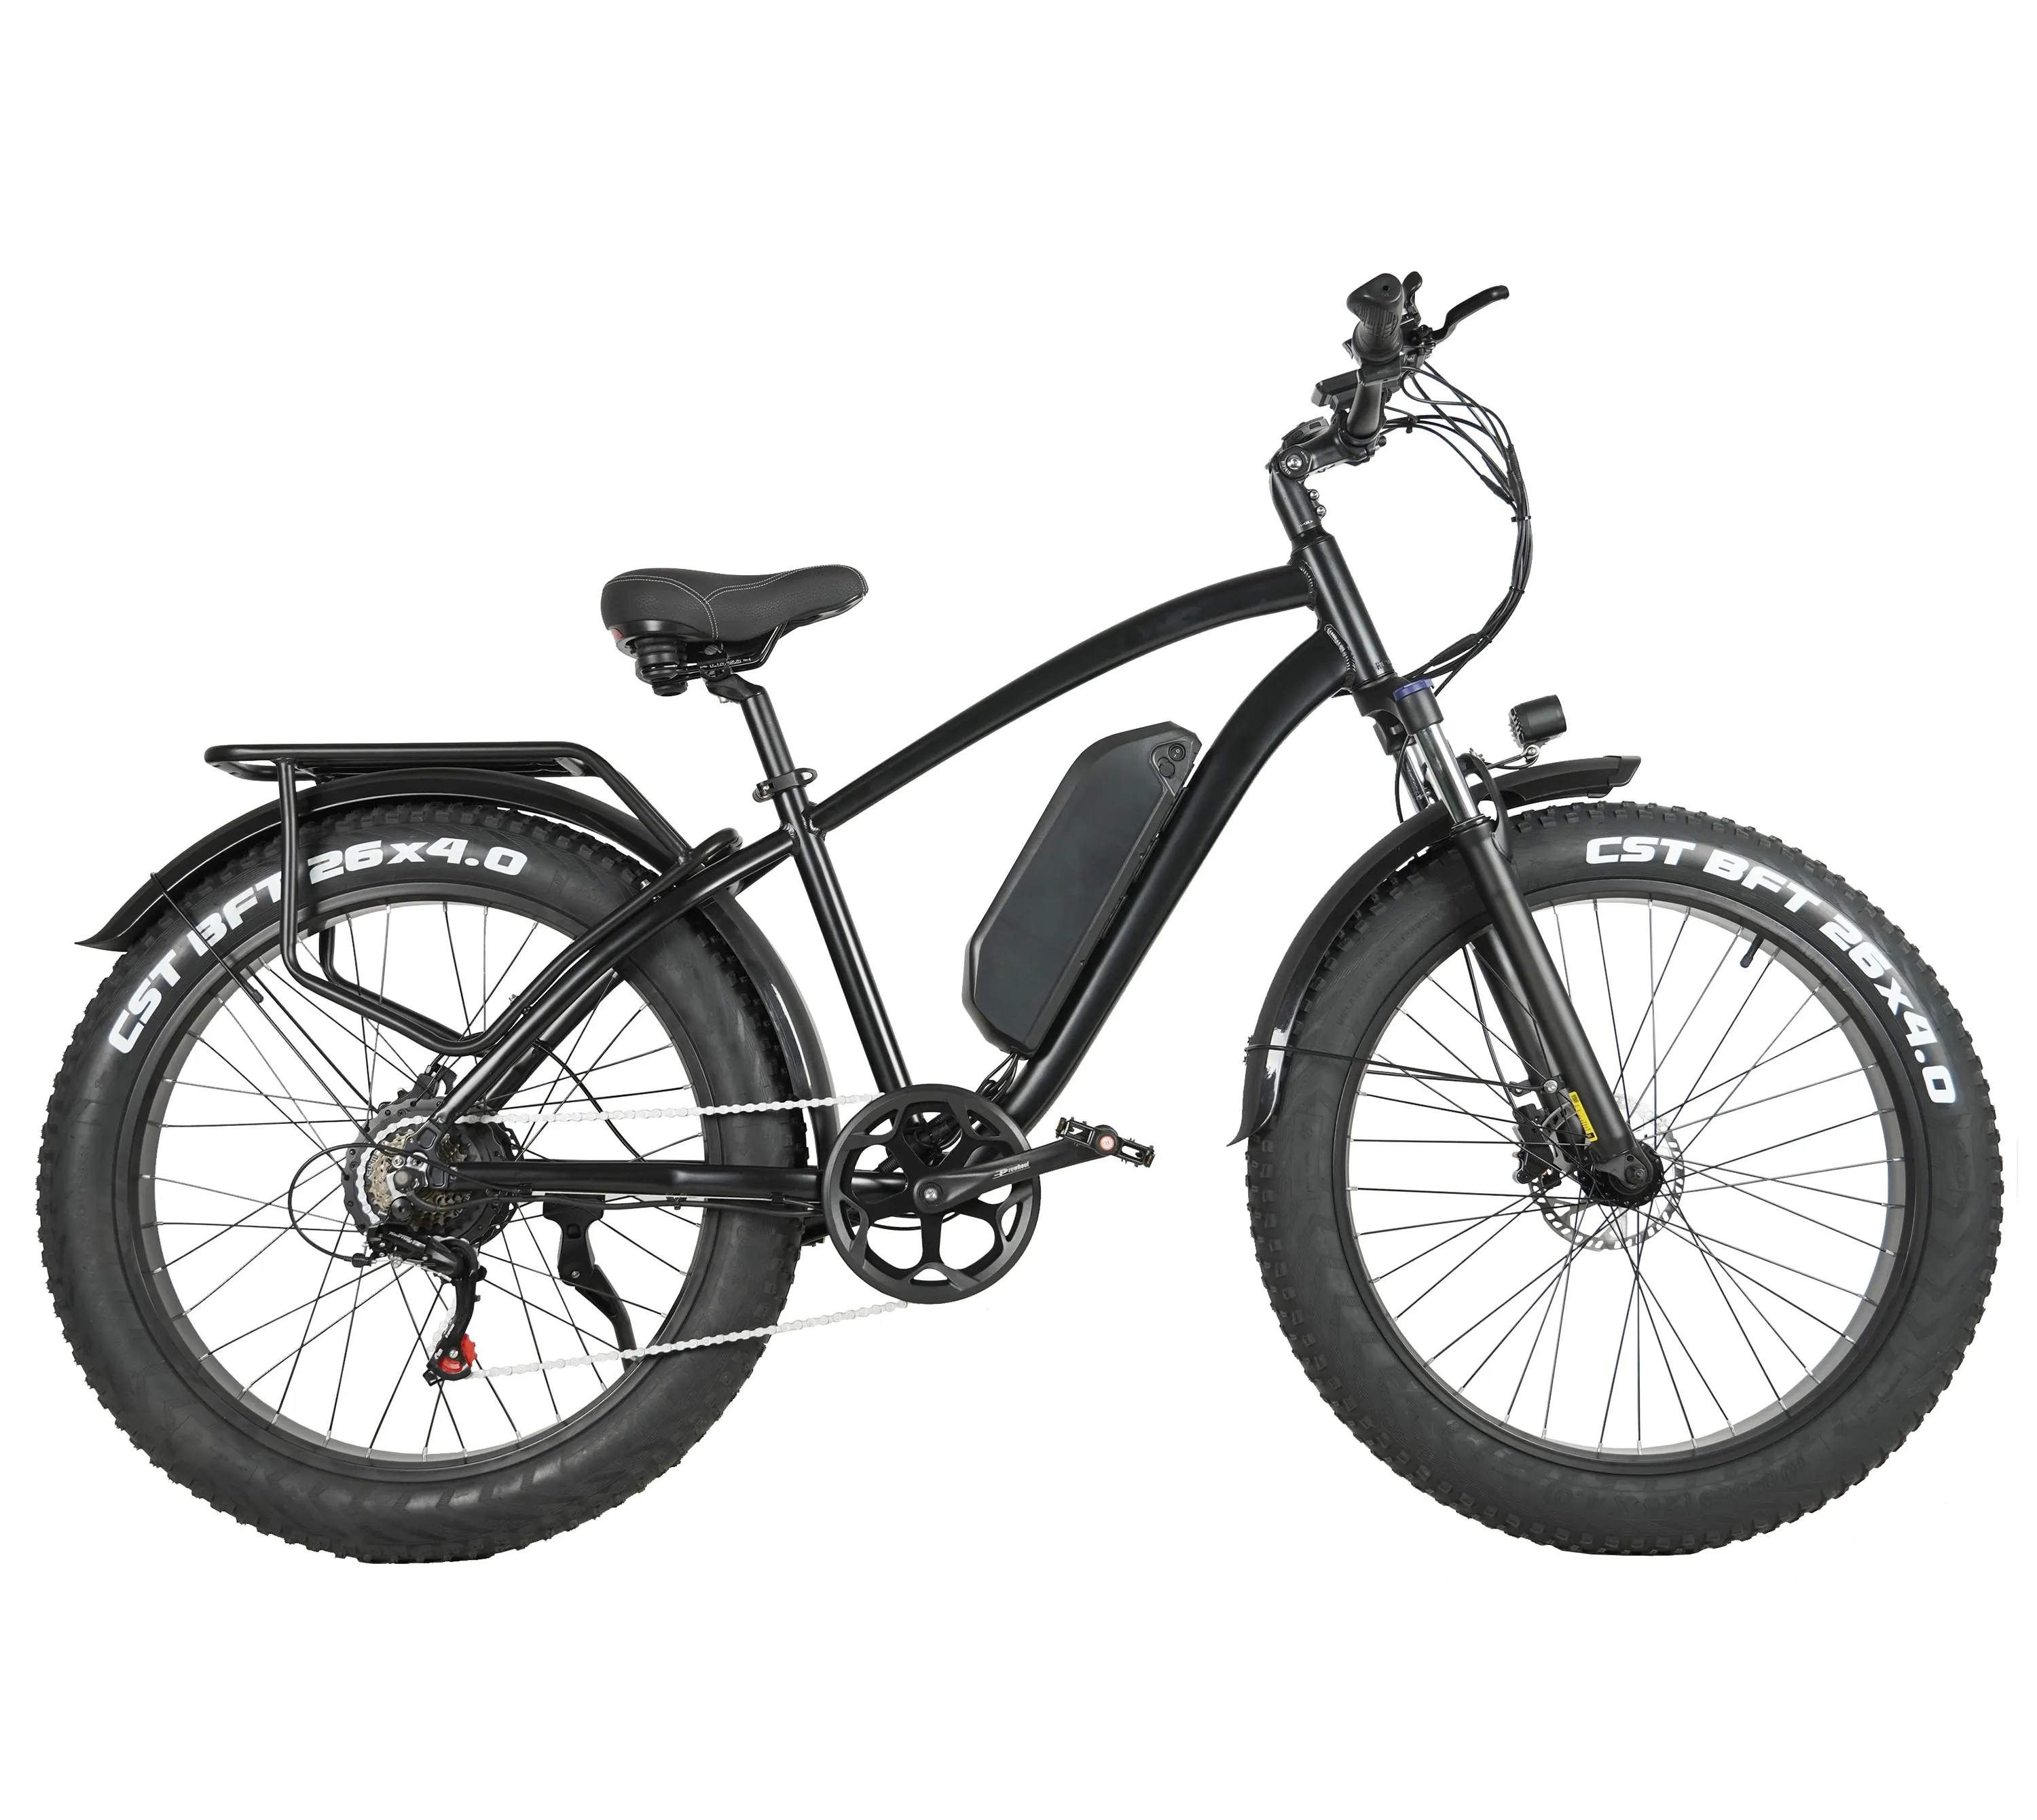 EU Stock bici elettrica italiana spedizione gratuita a lungo raggio 26x4.0 Fat Tire bicicletta elettrica 1000W magazzino ue con schermo a colori